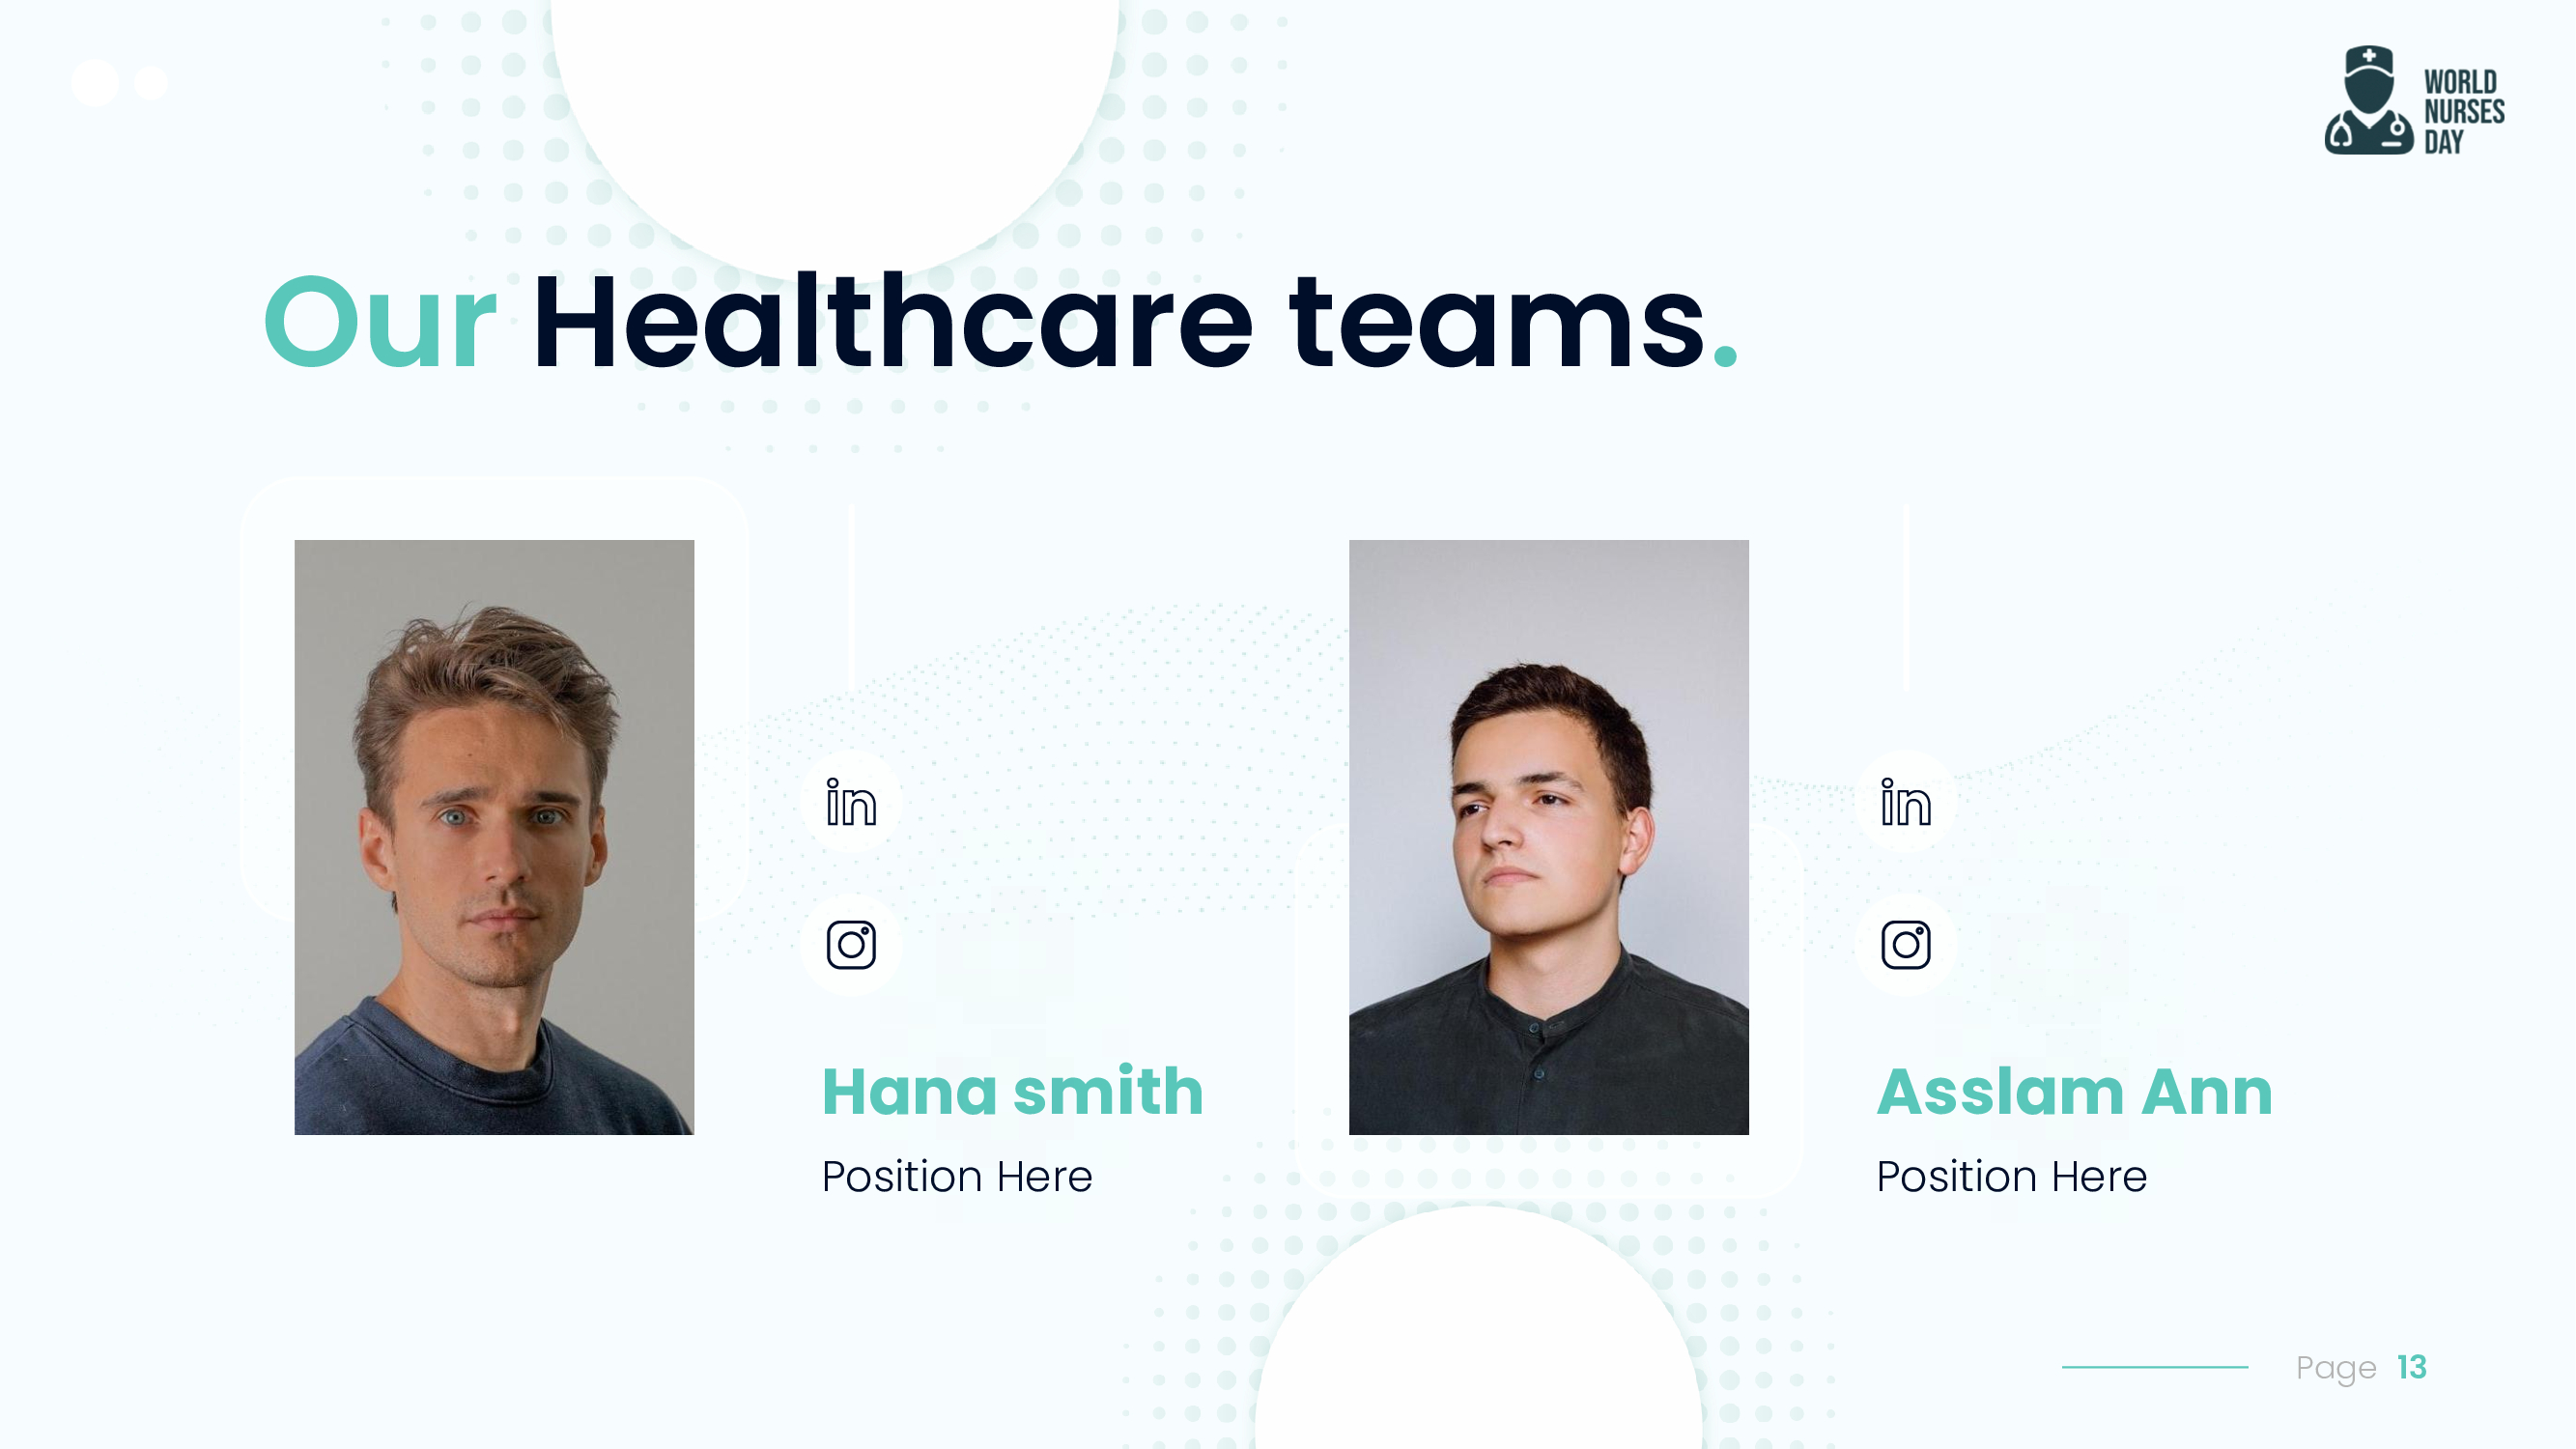 Describe your healthcare teams.